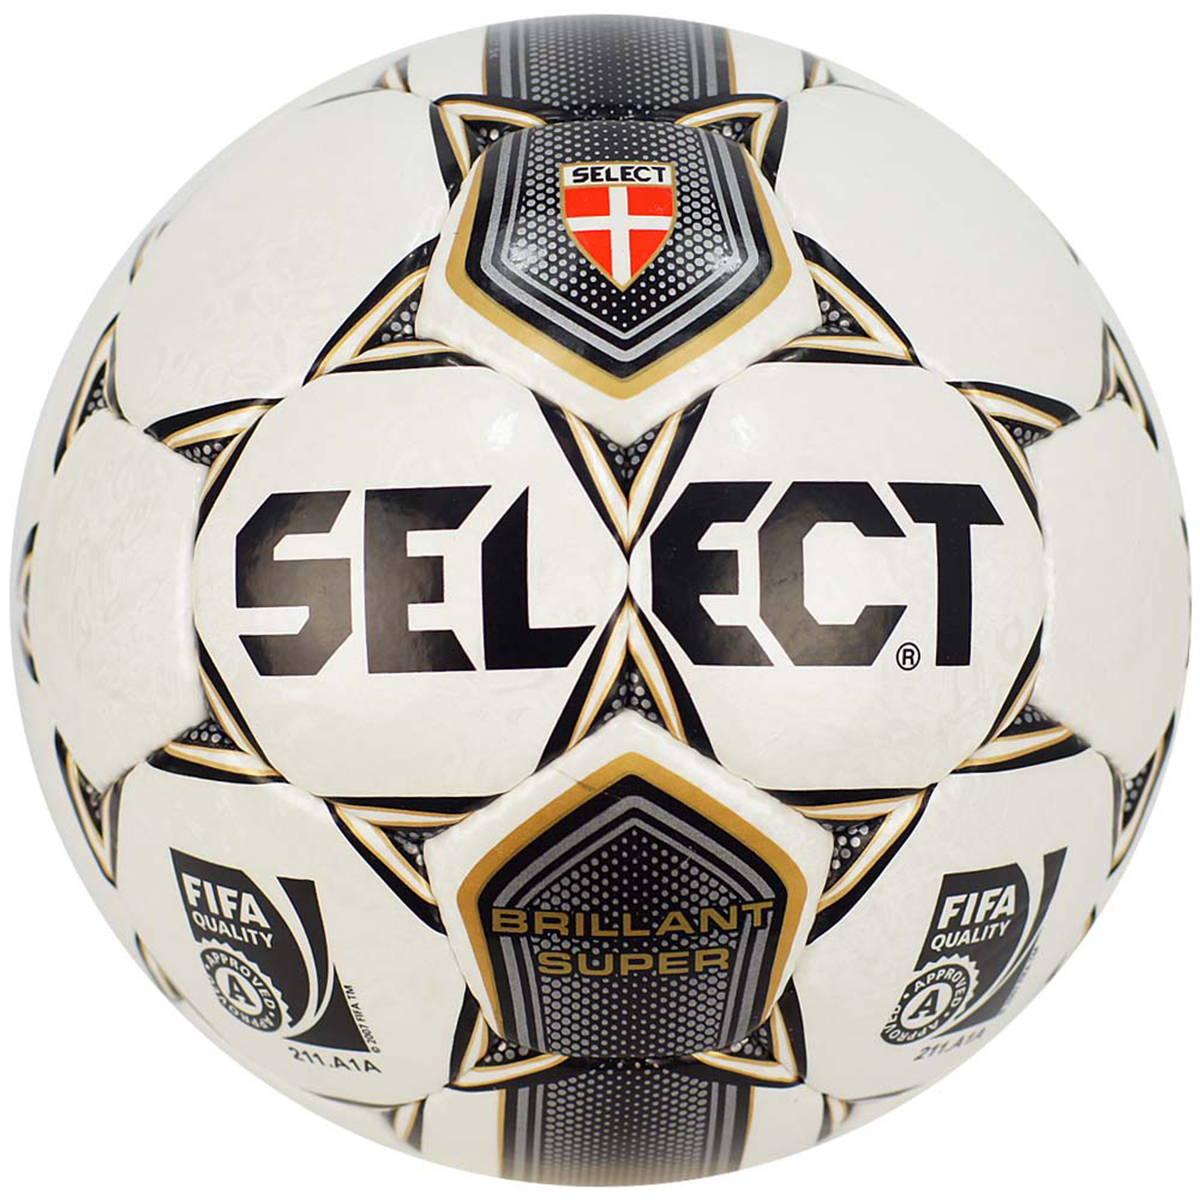 Футбольный мяч select. Футбольный мяч select brillant super. Мяч select Futsal super FIFA. Мяч футбольный select Brilliant super FIFA.